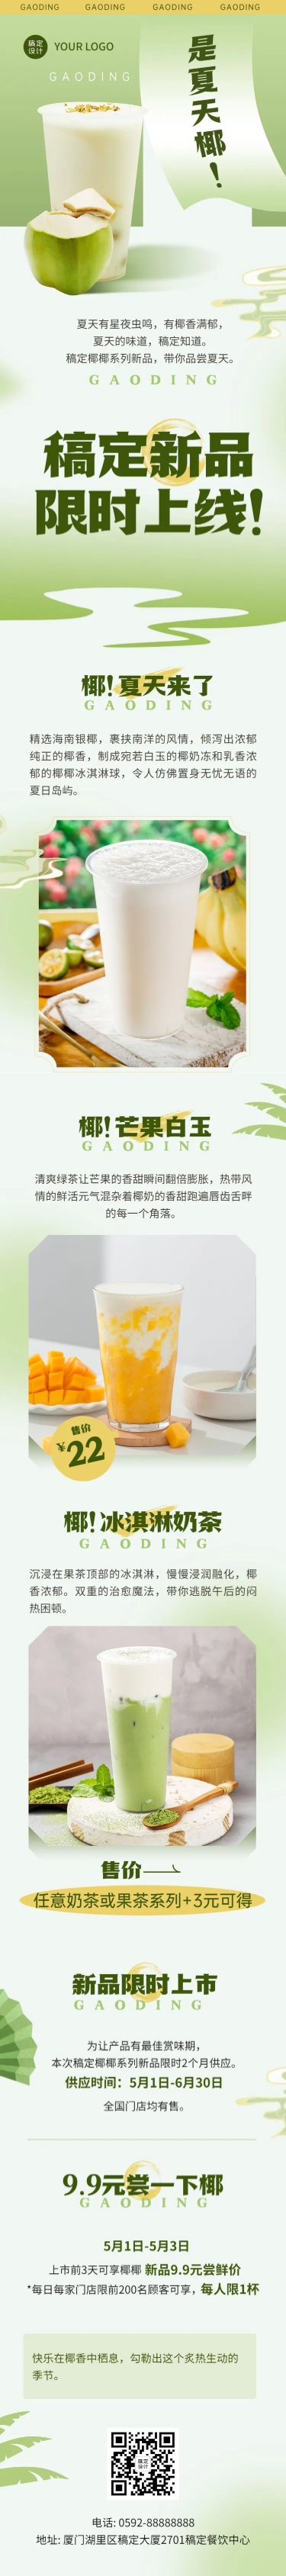 清新创意餐饮夏季营销奶茶饮品新品上市文章长图预览效果